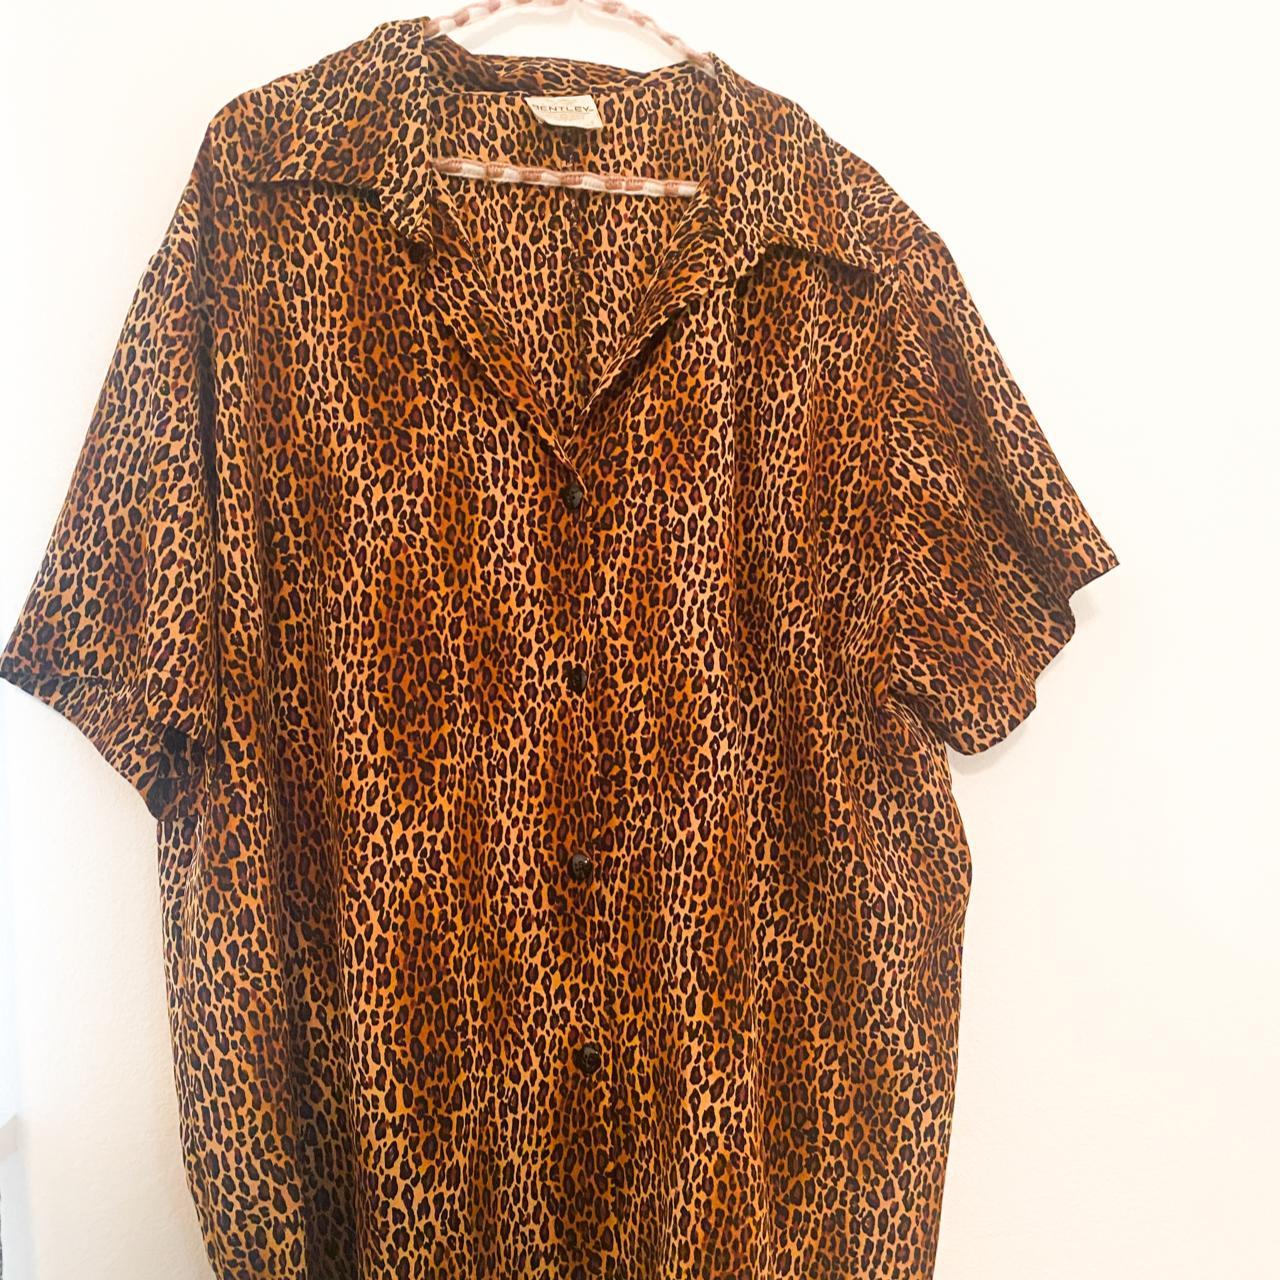 90's Cheetah Print Oversized Button Up Shirt didn't... - Depop